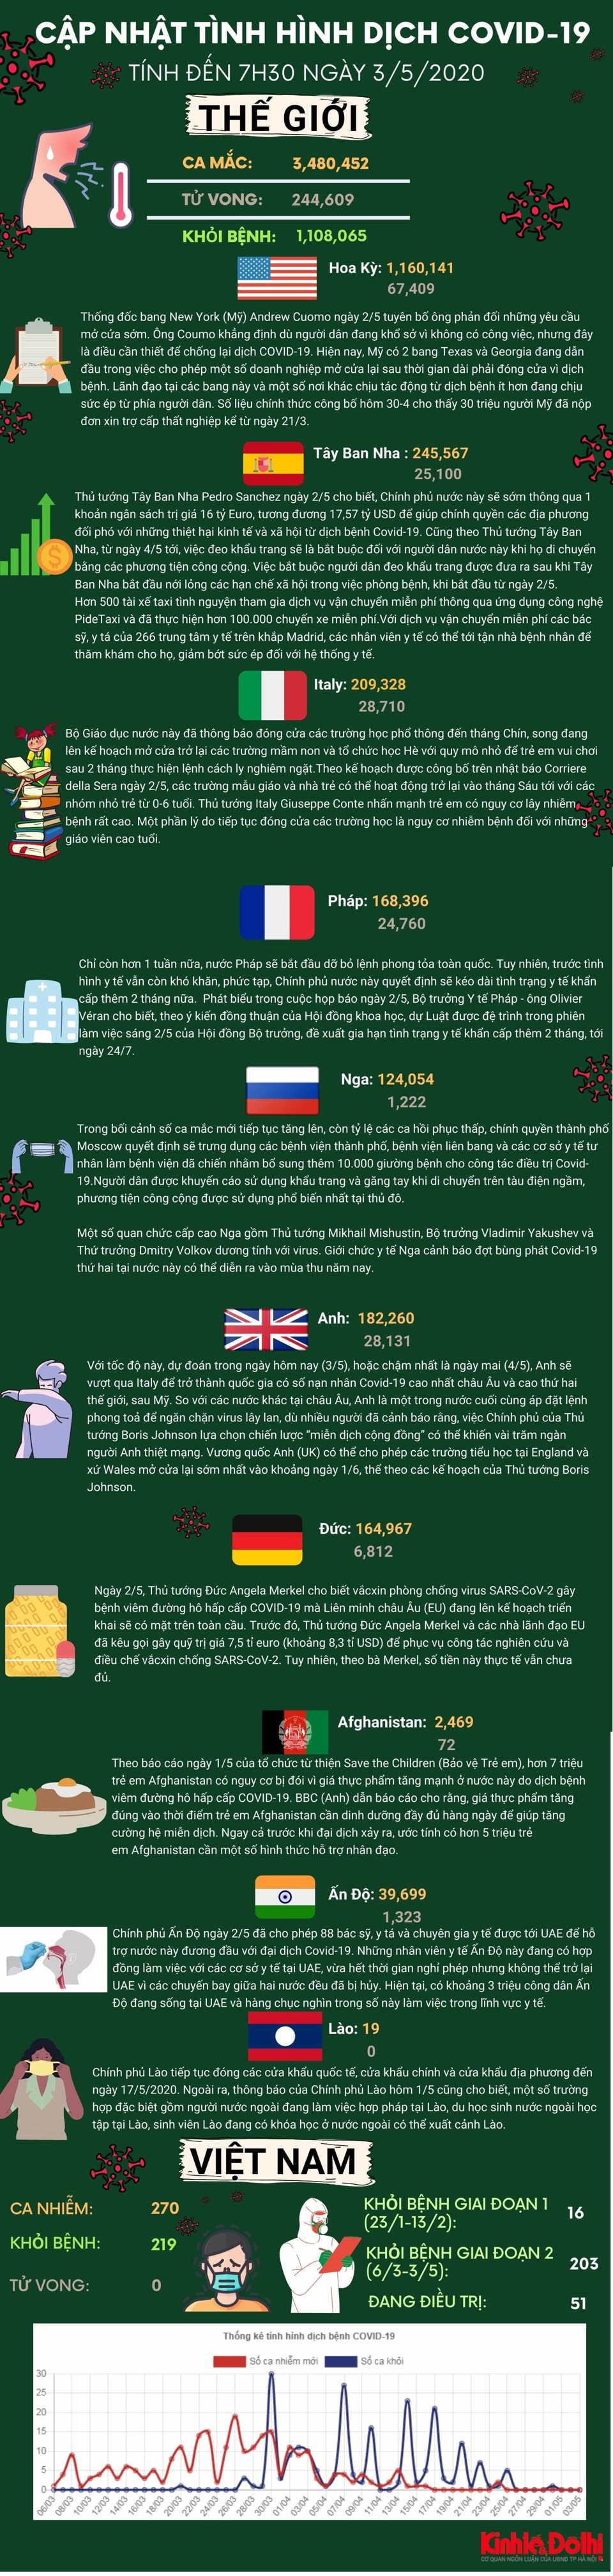 [Infographic] Dịch Covid-19 sáng 3/5: Hơn 240 nghìn người tử vong, hàng triệu trẻ em có nguy cơ chết đói - Ảnh 1